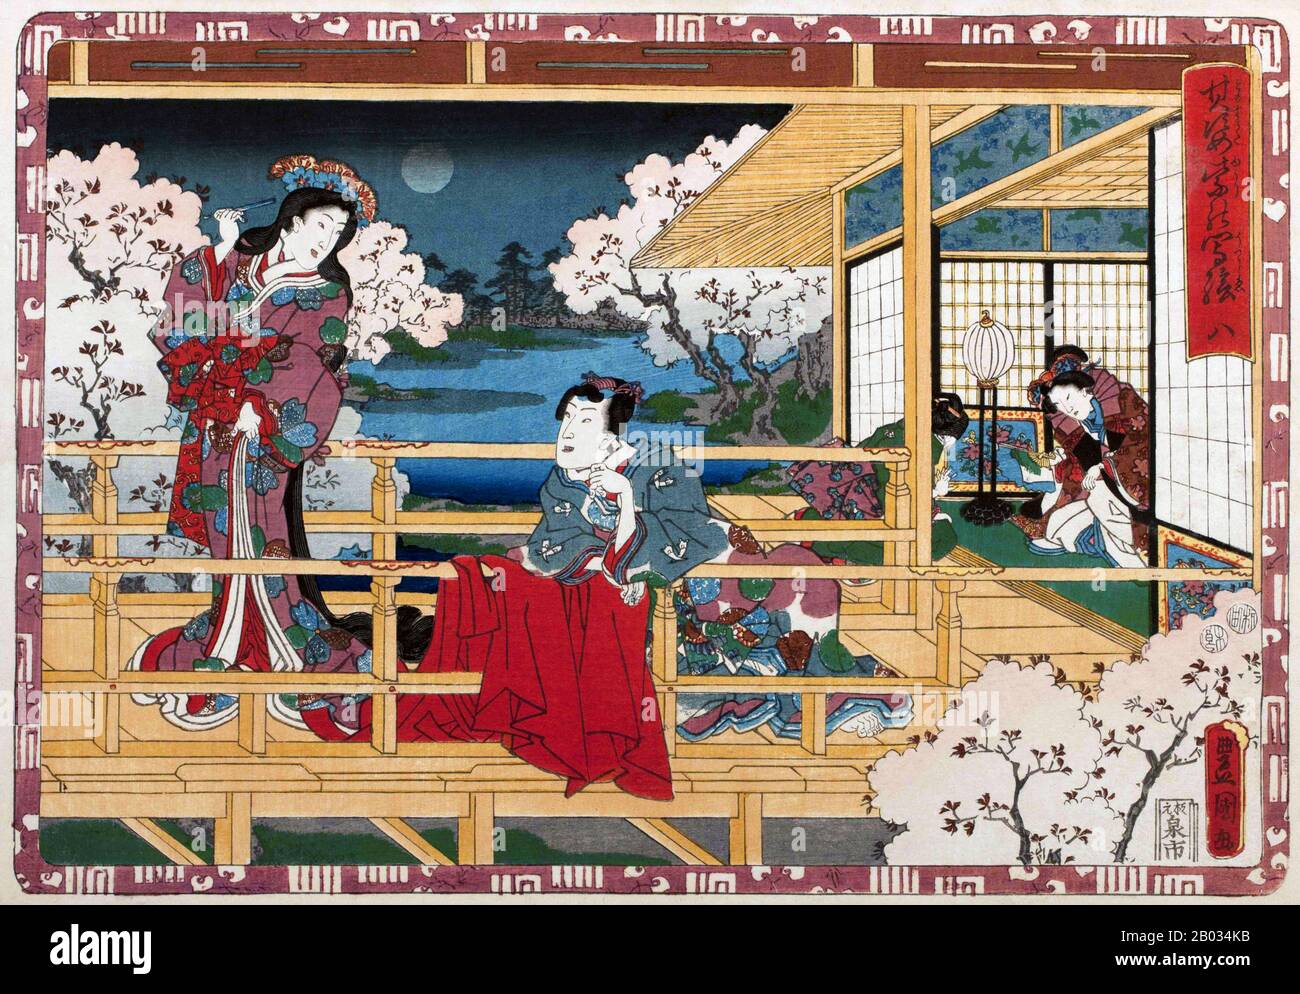 Le Tale de Genji (Genji Monogatari) est une oeuvre classique de littérature japonaise attribuée à la noblewoman japonais Murasaki Shikibu au début du XIe siècle, autour du pic de la période Heian. Il est parfois appelé le premier roman du monde, le premier roman moderne, le premier roman psychologique ou le premier roman encore considéré comme un classique. Notamment, le roman illustre également une représentation unique des moyens de subsistance des hauts niveaux de cours pendant la période Heian. Banque D'Images